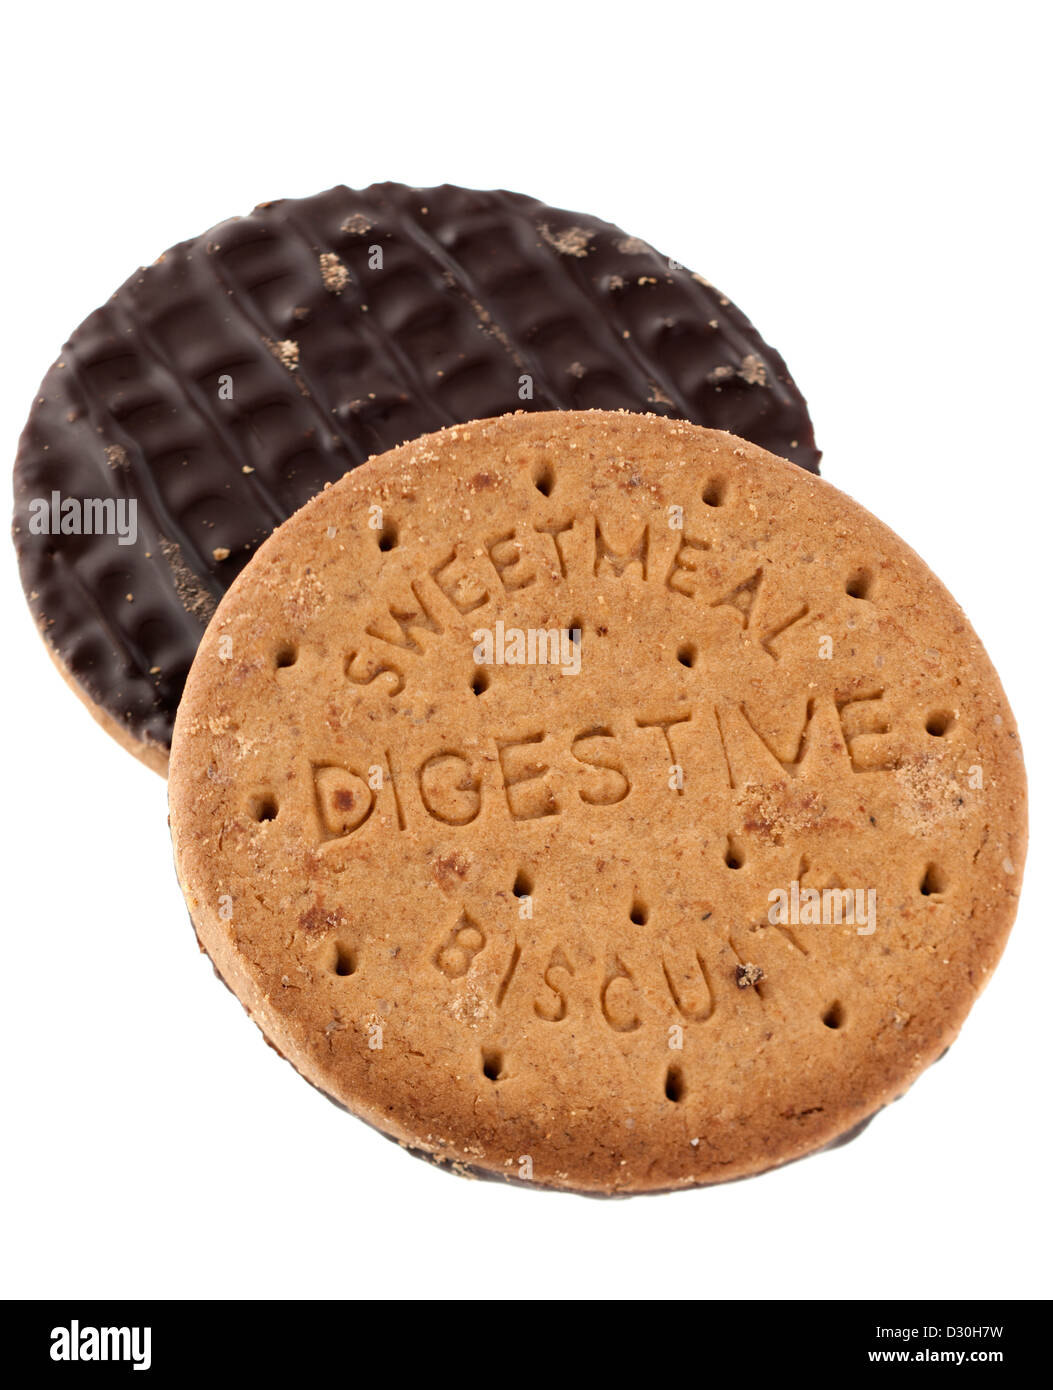 Due sweetmeal biscotti digestivi mezzo coperto di cioccolato fondente Foto Stock